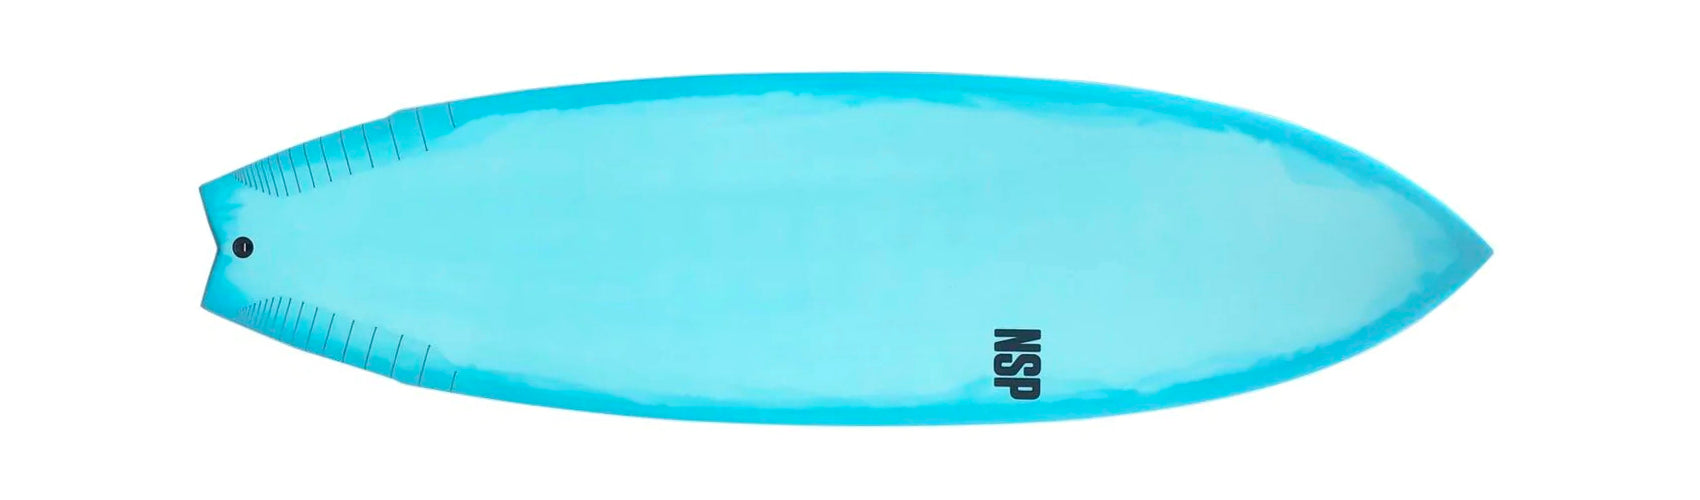 User Friendly Surfboards - Fish Funboard shape